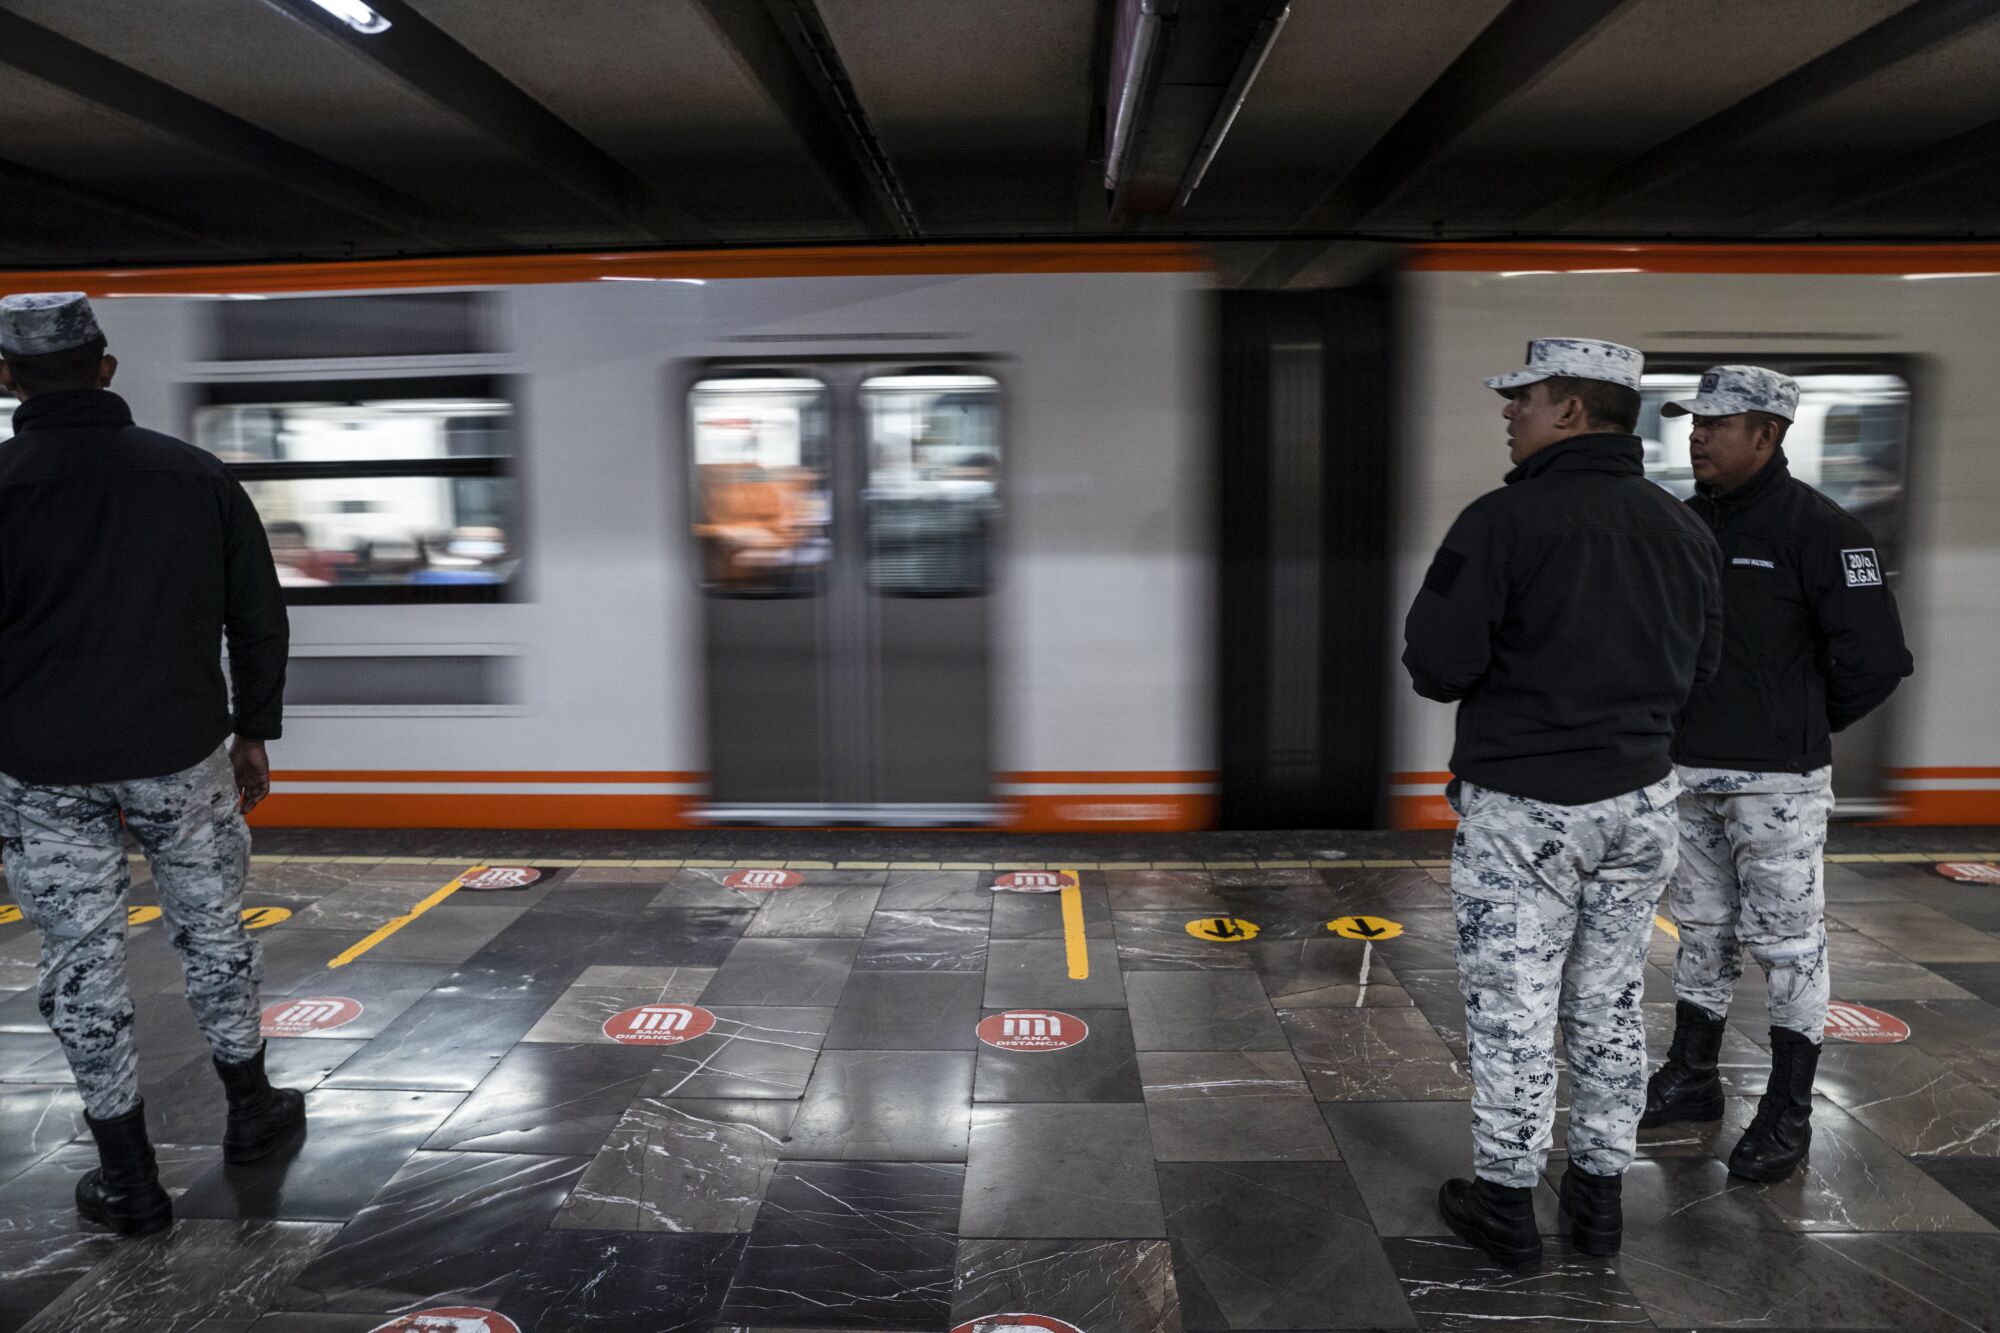 Bir metro treni hızla geçerken aynı kıyafetlere sahip üç kişi bir platformda duruyor.